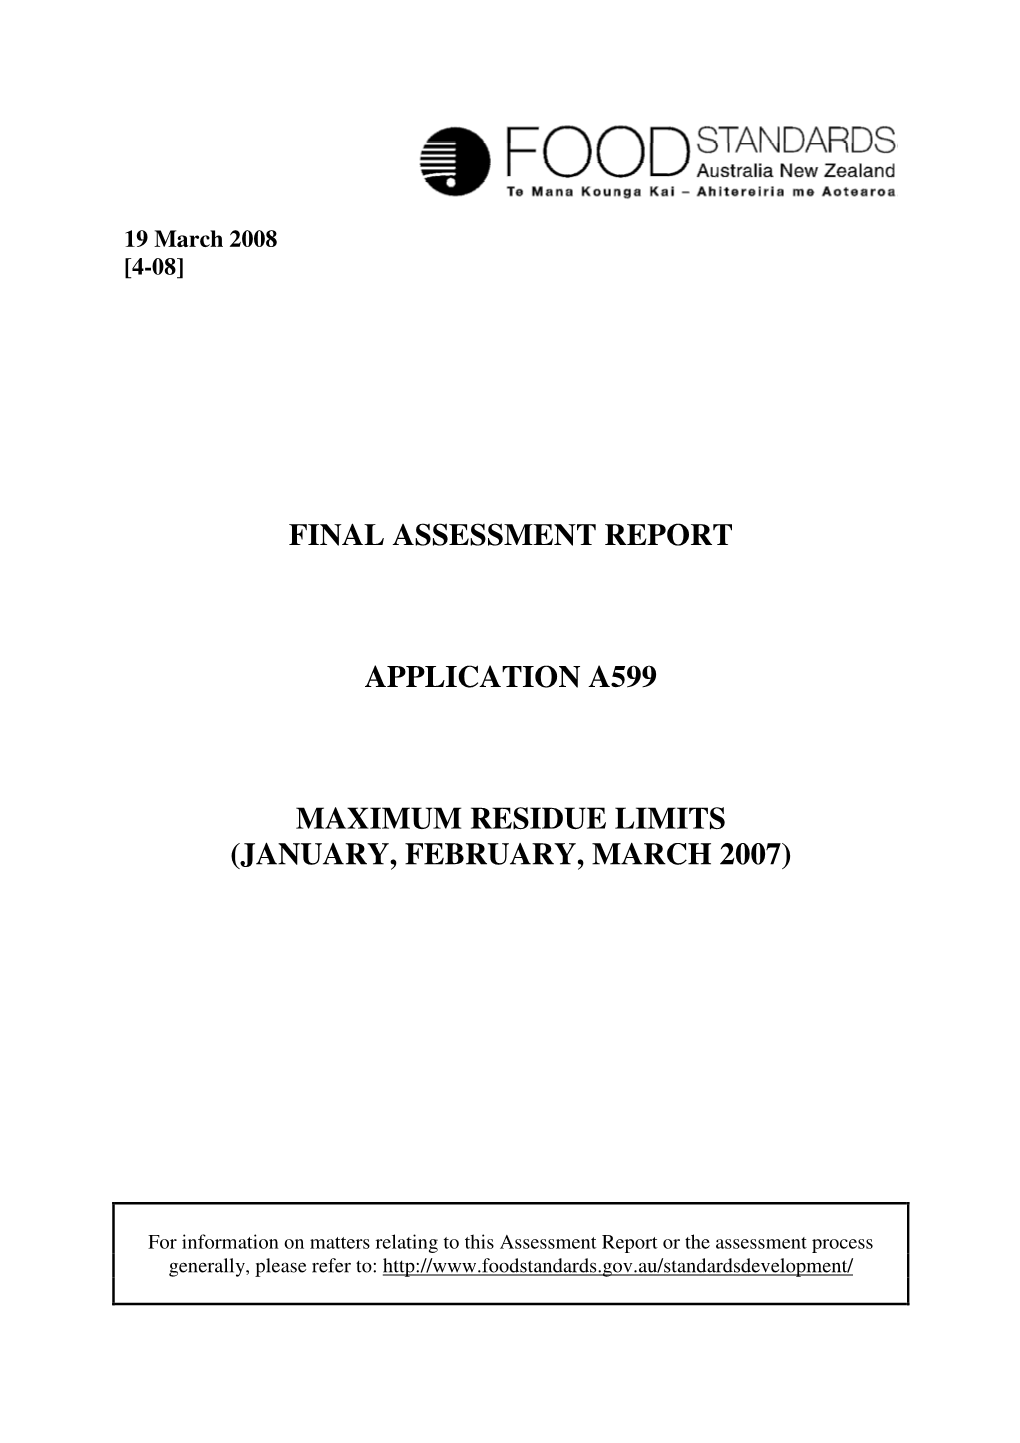 Final Assessment Report Application A599 Maximum